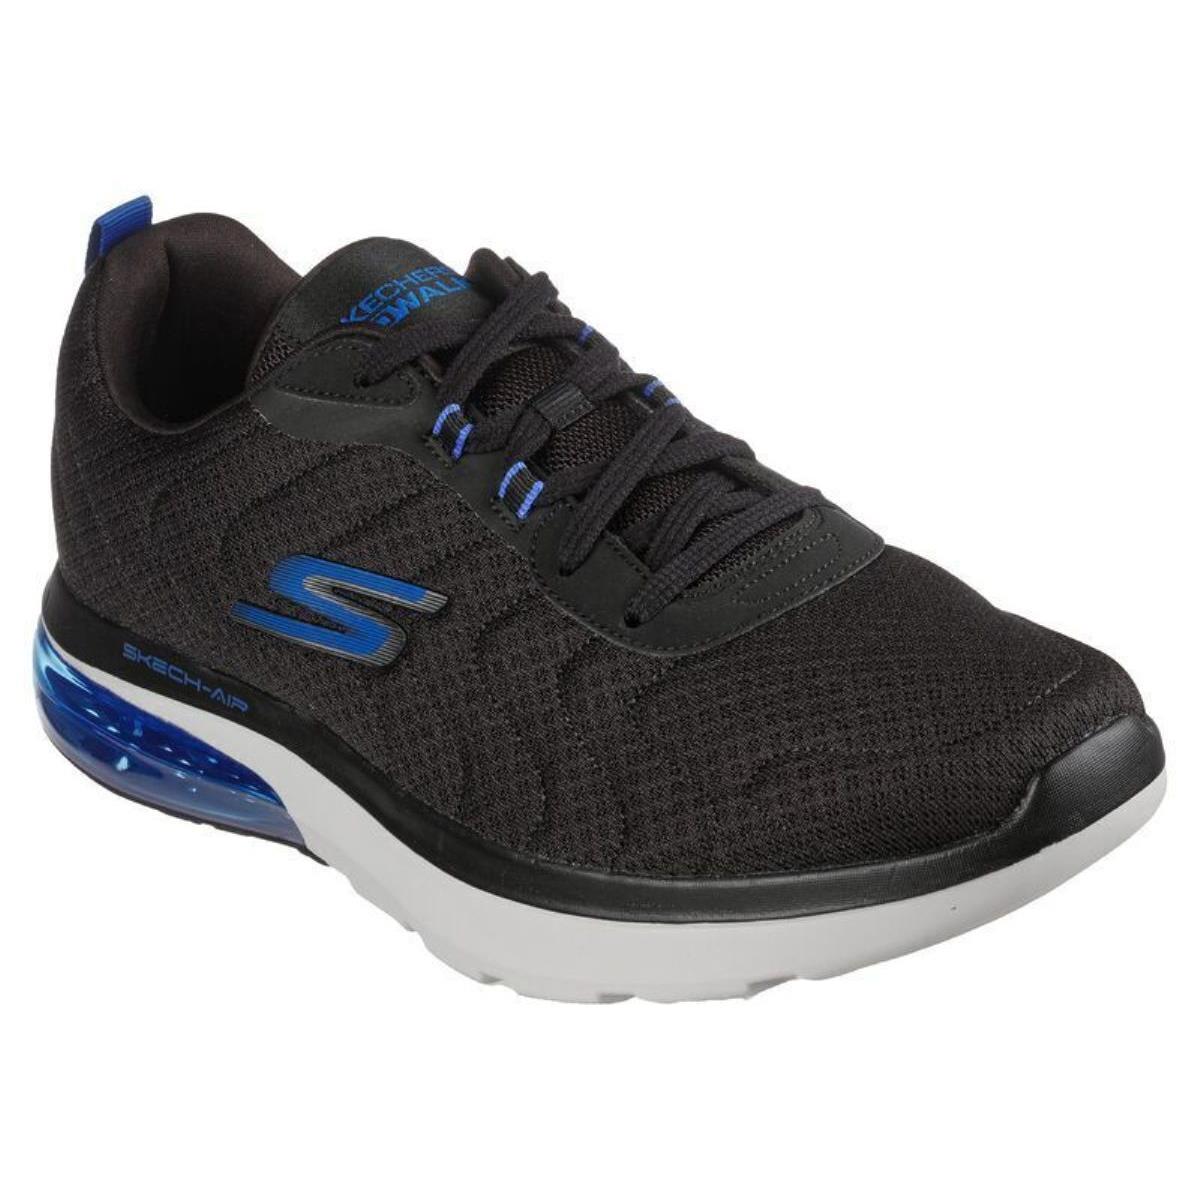 Man Skechers Go Walk Air 2.0 Trainers Lace Up Shoe 216154 Black/blue - Black/Blue